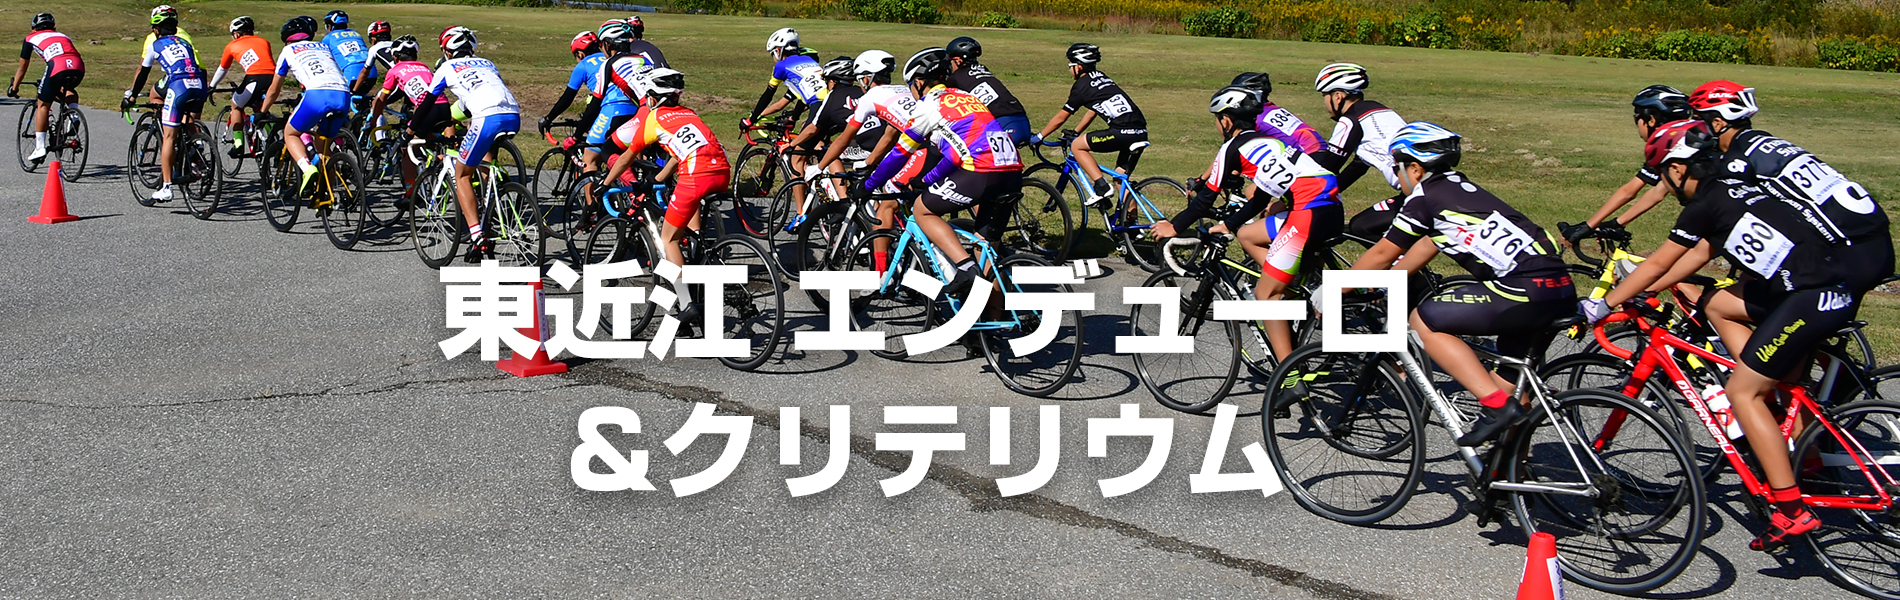 ２０２５年に開催される滋賀国民スポーツ大会ロード・レース会場となる東近江市で自転車競技大会（子どもと大人のバディリレー、エンデューロ、クリテリウム）を開催することで東近江市の方々に自転車競技を知ってもらう機会をつくり、さらに未来を担う子どもたちが自転車競技を始めるきっかけづくりとなる大会です。東近江市が自転車のまちづくり、また地域のさらなる発展に貢献できるようPRする大会を目的とします。